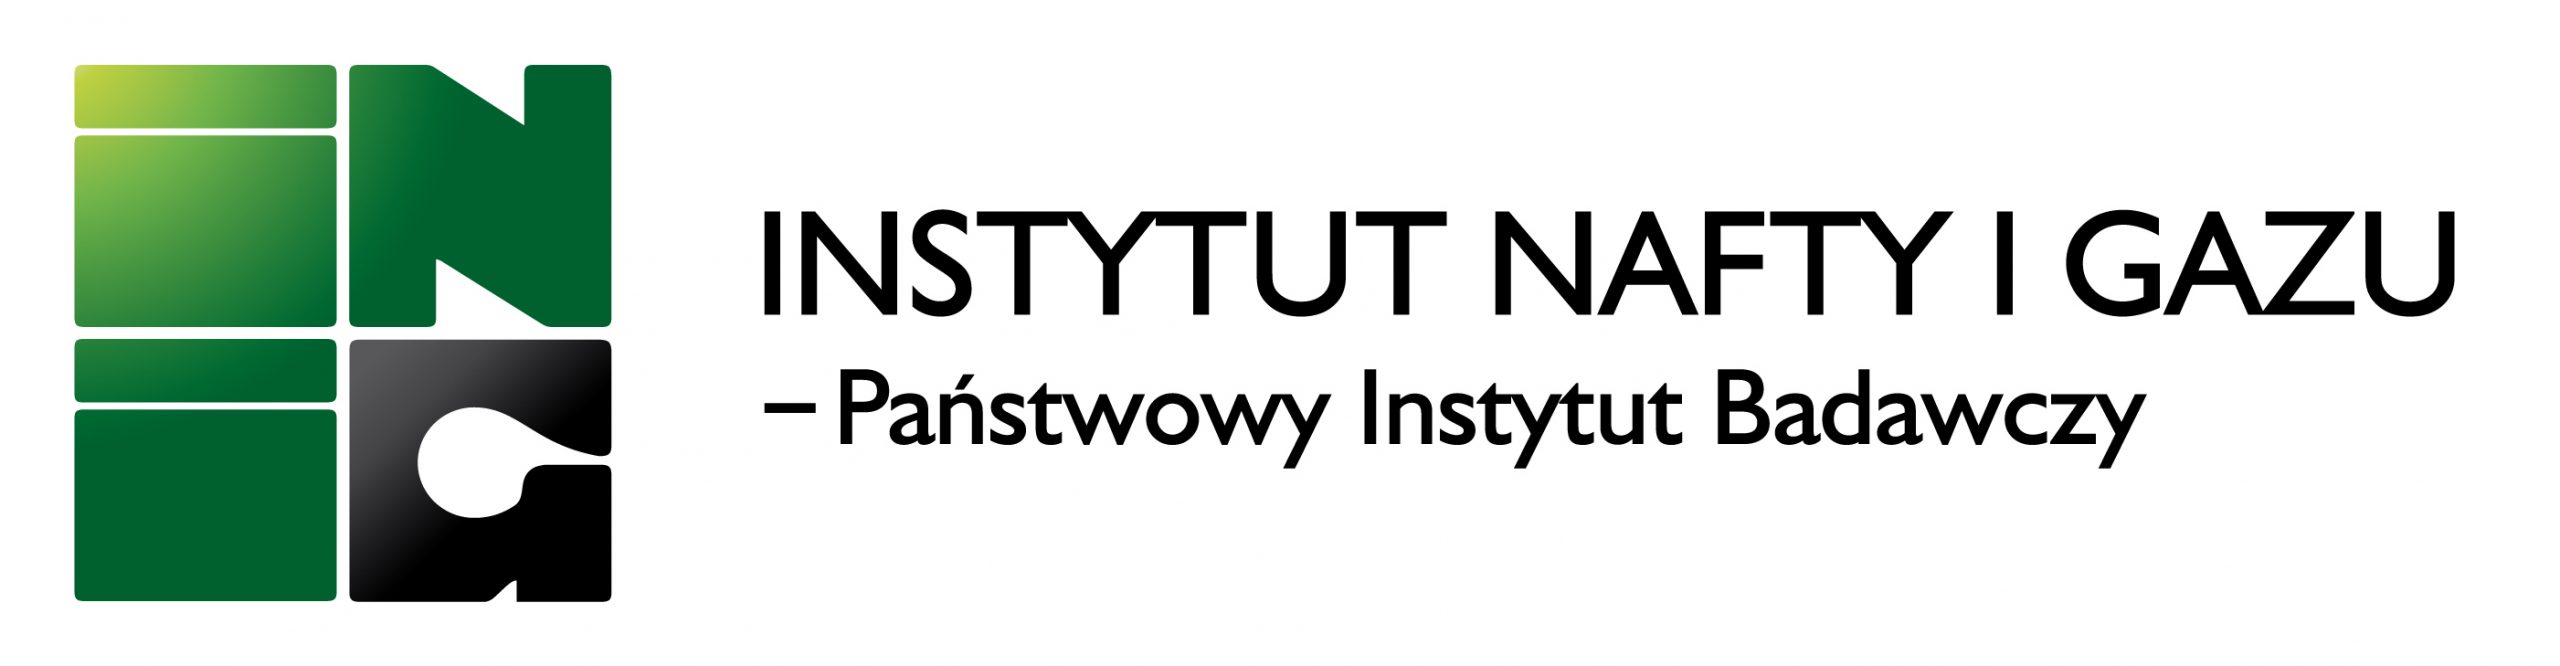 INSTYTUT NAFTY I GAZU - Państwowy Instytut Badawczy